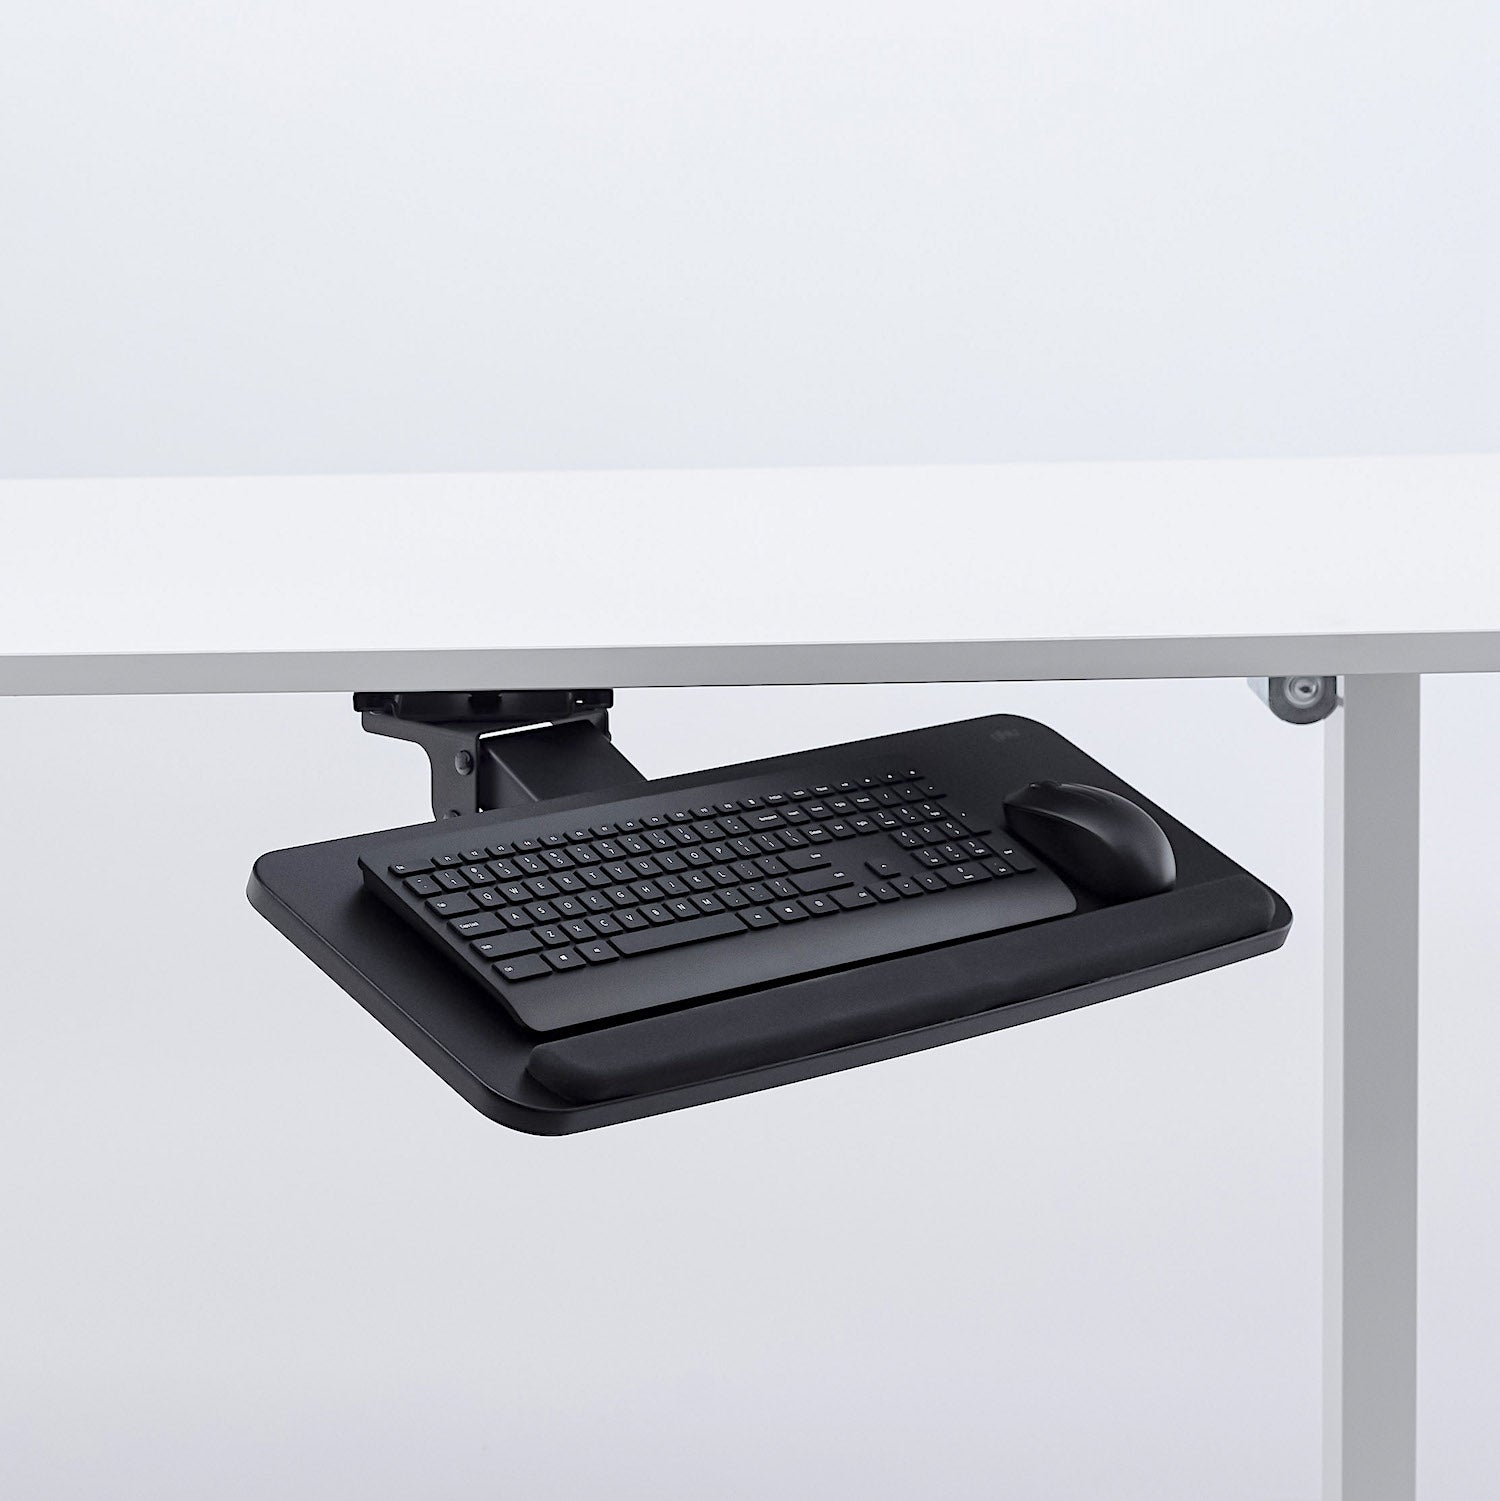 gku™ Adjustable Keyboard and Mouse Tray | gku.